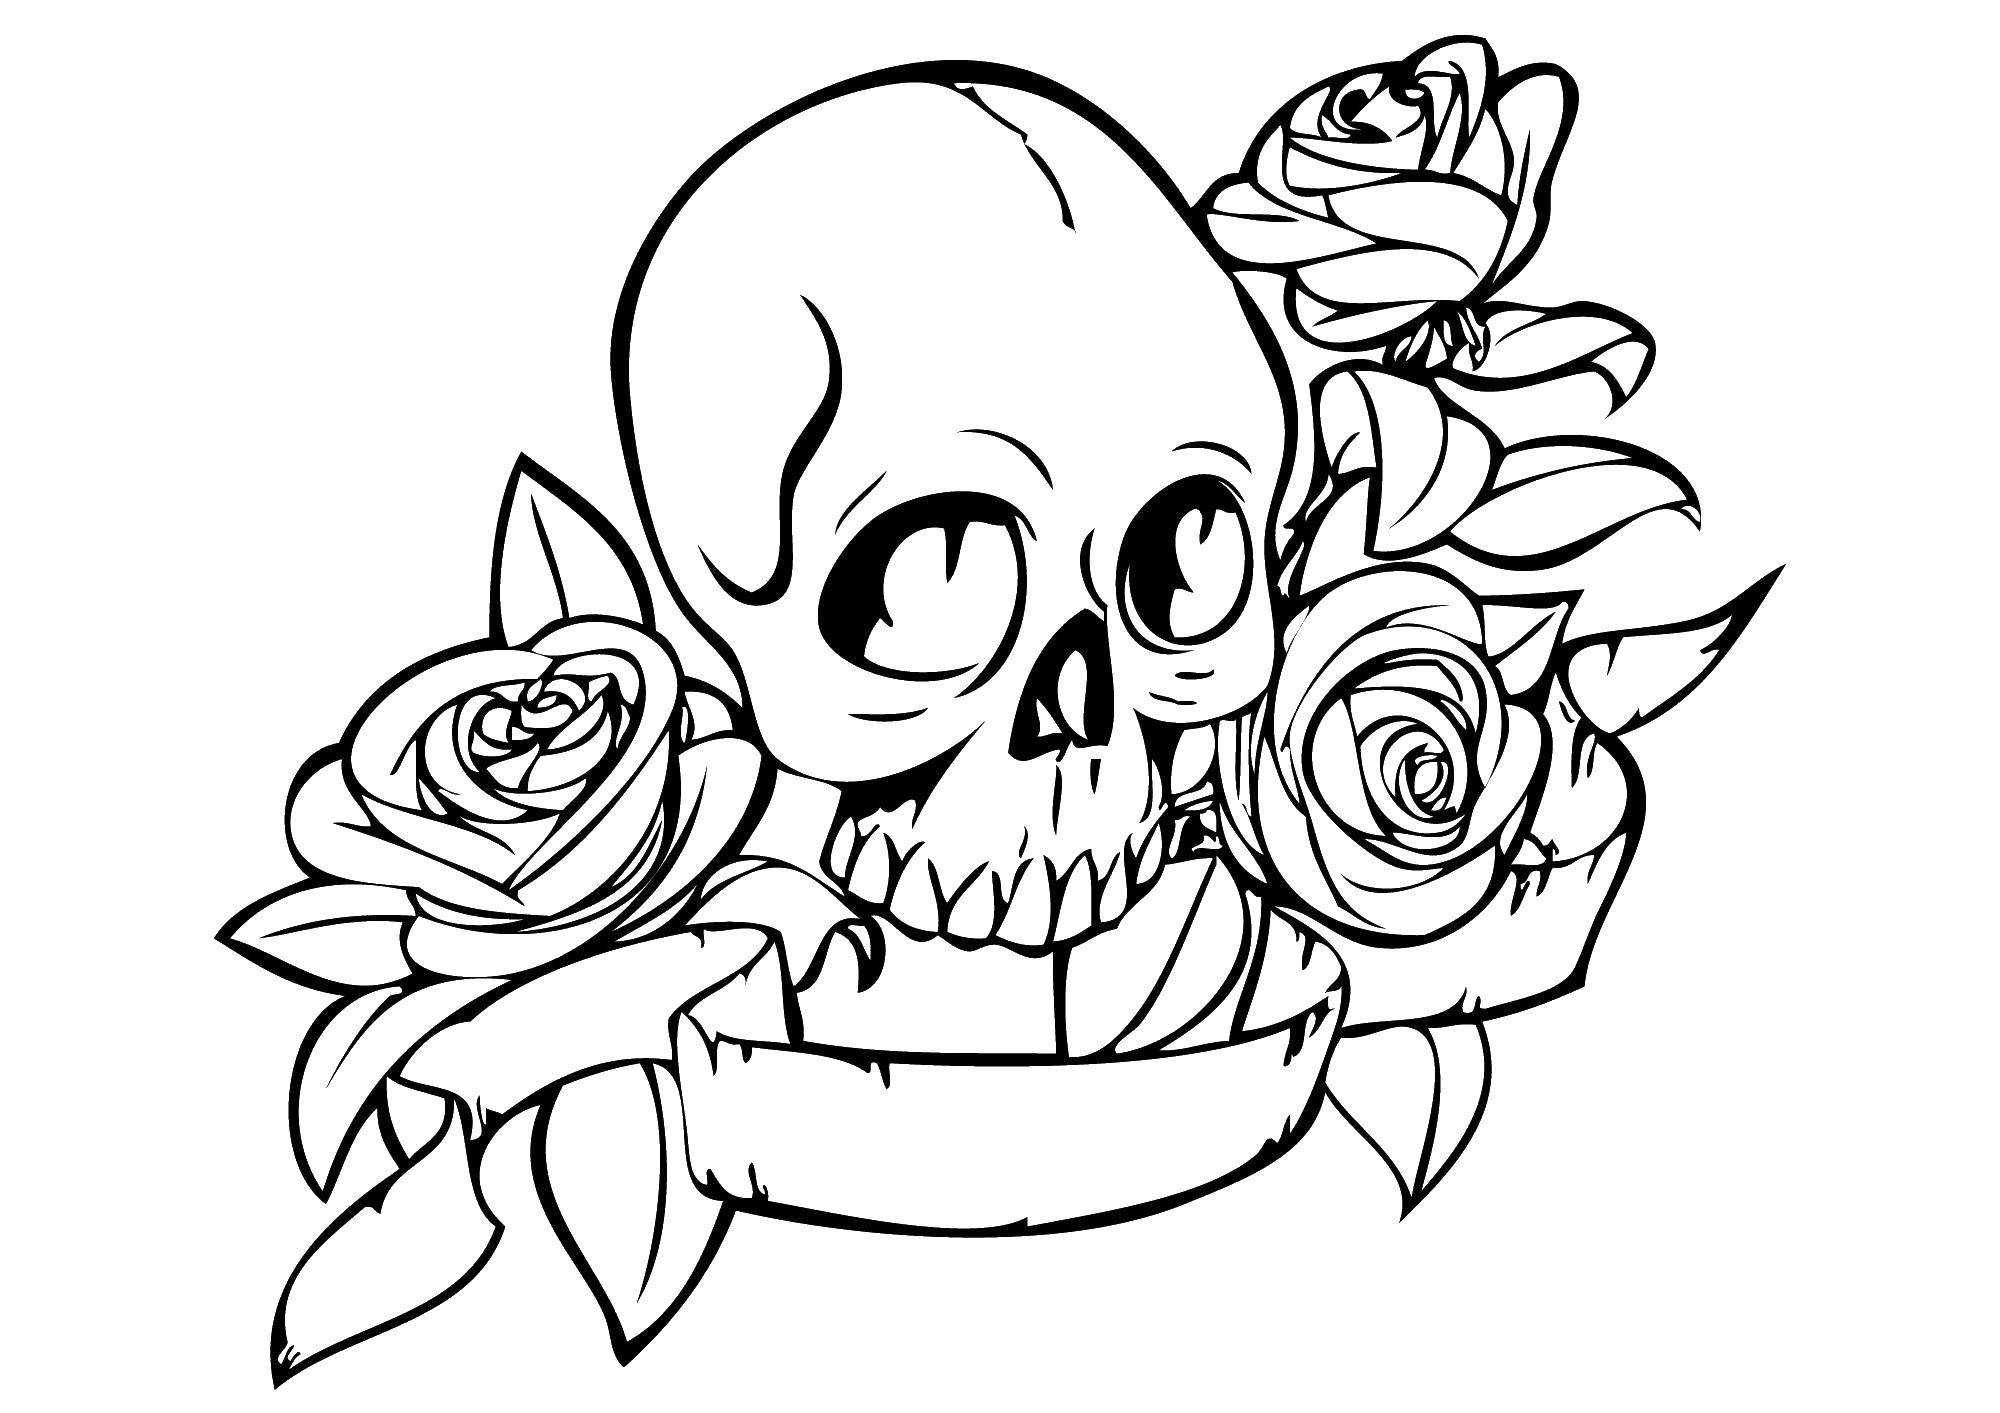 Coloring Skull in roses. Category Skull. Tags:  roses, skull.